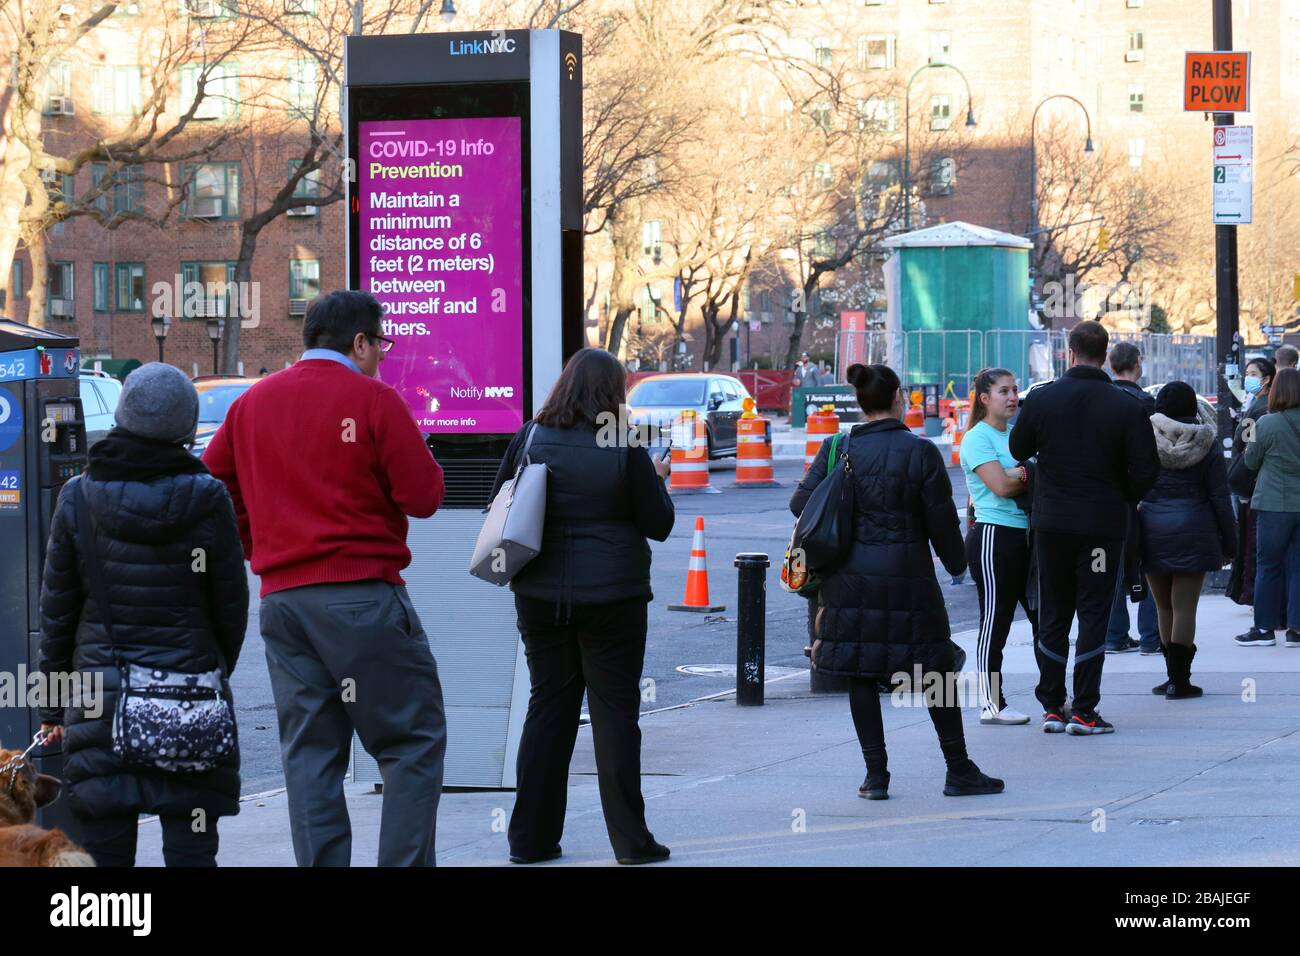 New York, NY, 27 marzo 2020. I newyorkesi che praticano il sociale di distanza mentre accodano per entrare in un supermercato... PER ULTERIORI INFORMAZIONI, VEDERE LA DIDASCALIA COMPLETA Foto Stock